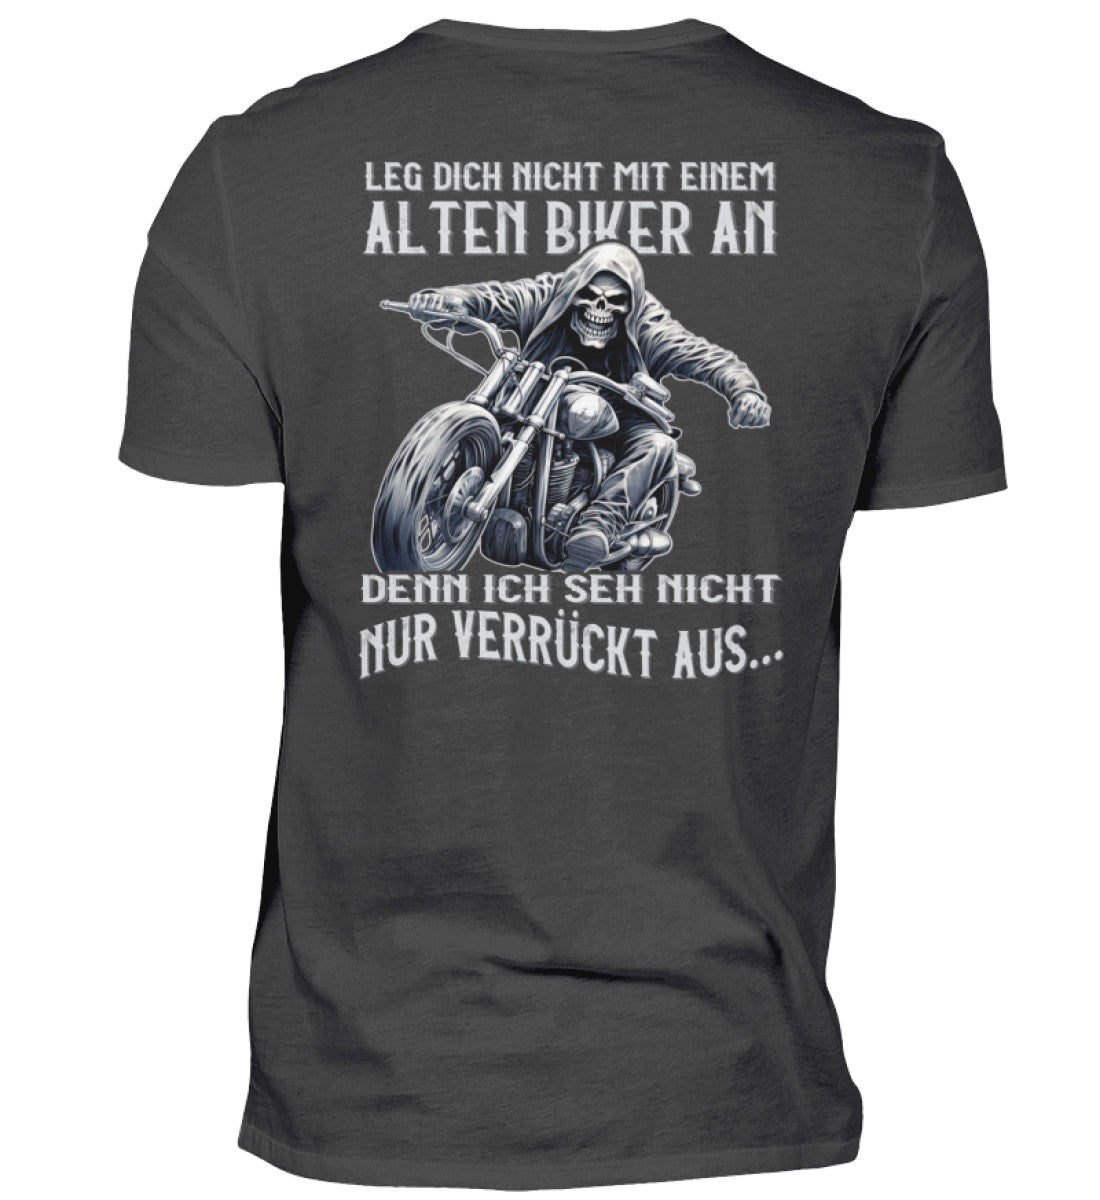 Ein Biker T-Shirt für Motorradfahrer von Wingbikers mit dem Aufdruck, Leg dich nicht mit einem alten Biker an, denn ich seh nicht nur verrückt aus, als Back Print - in dunkelgrau.